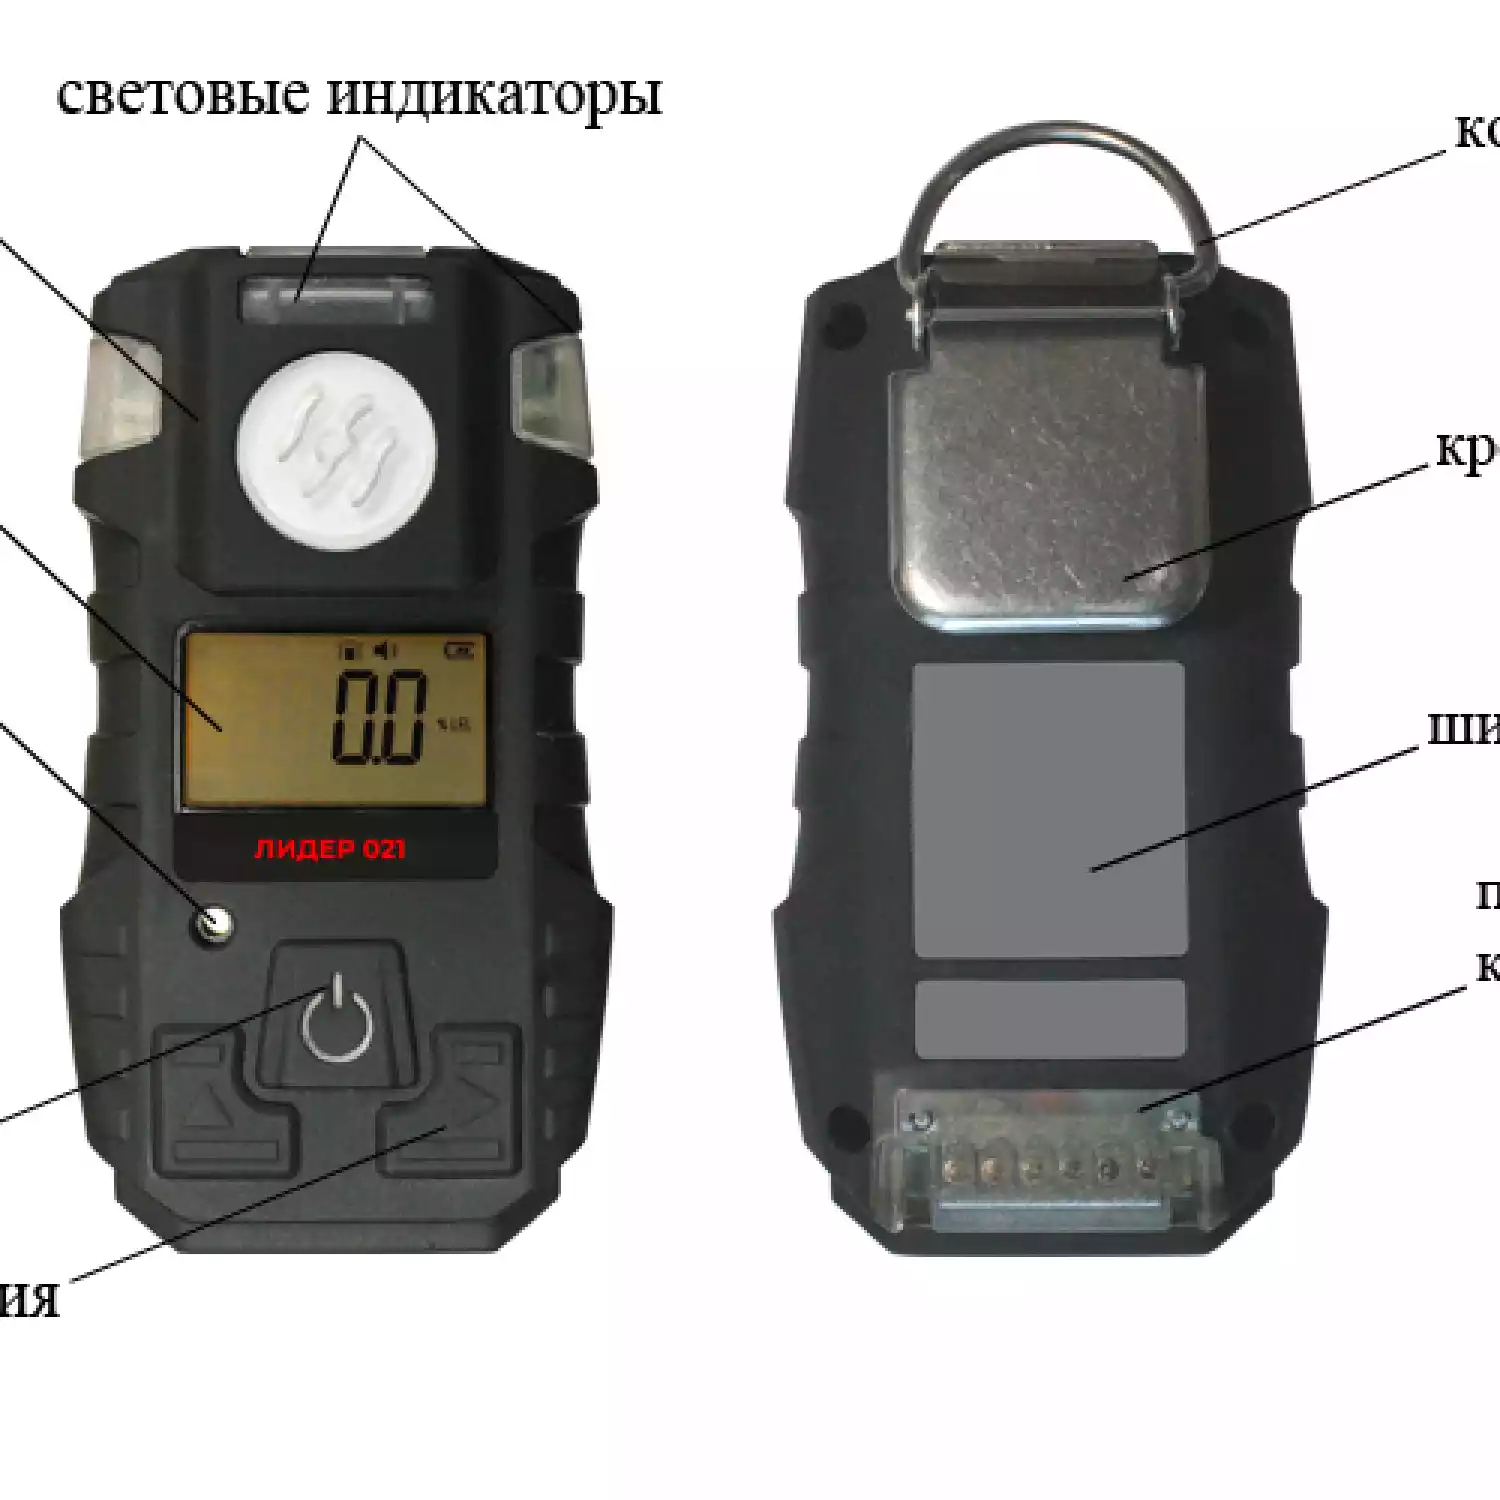 Газоанализатор портативный ЛИДЕР 021 (PH3) - 4